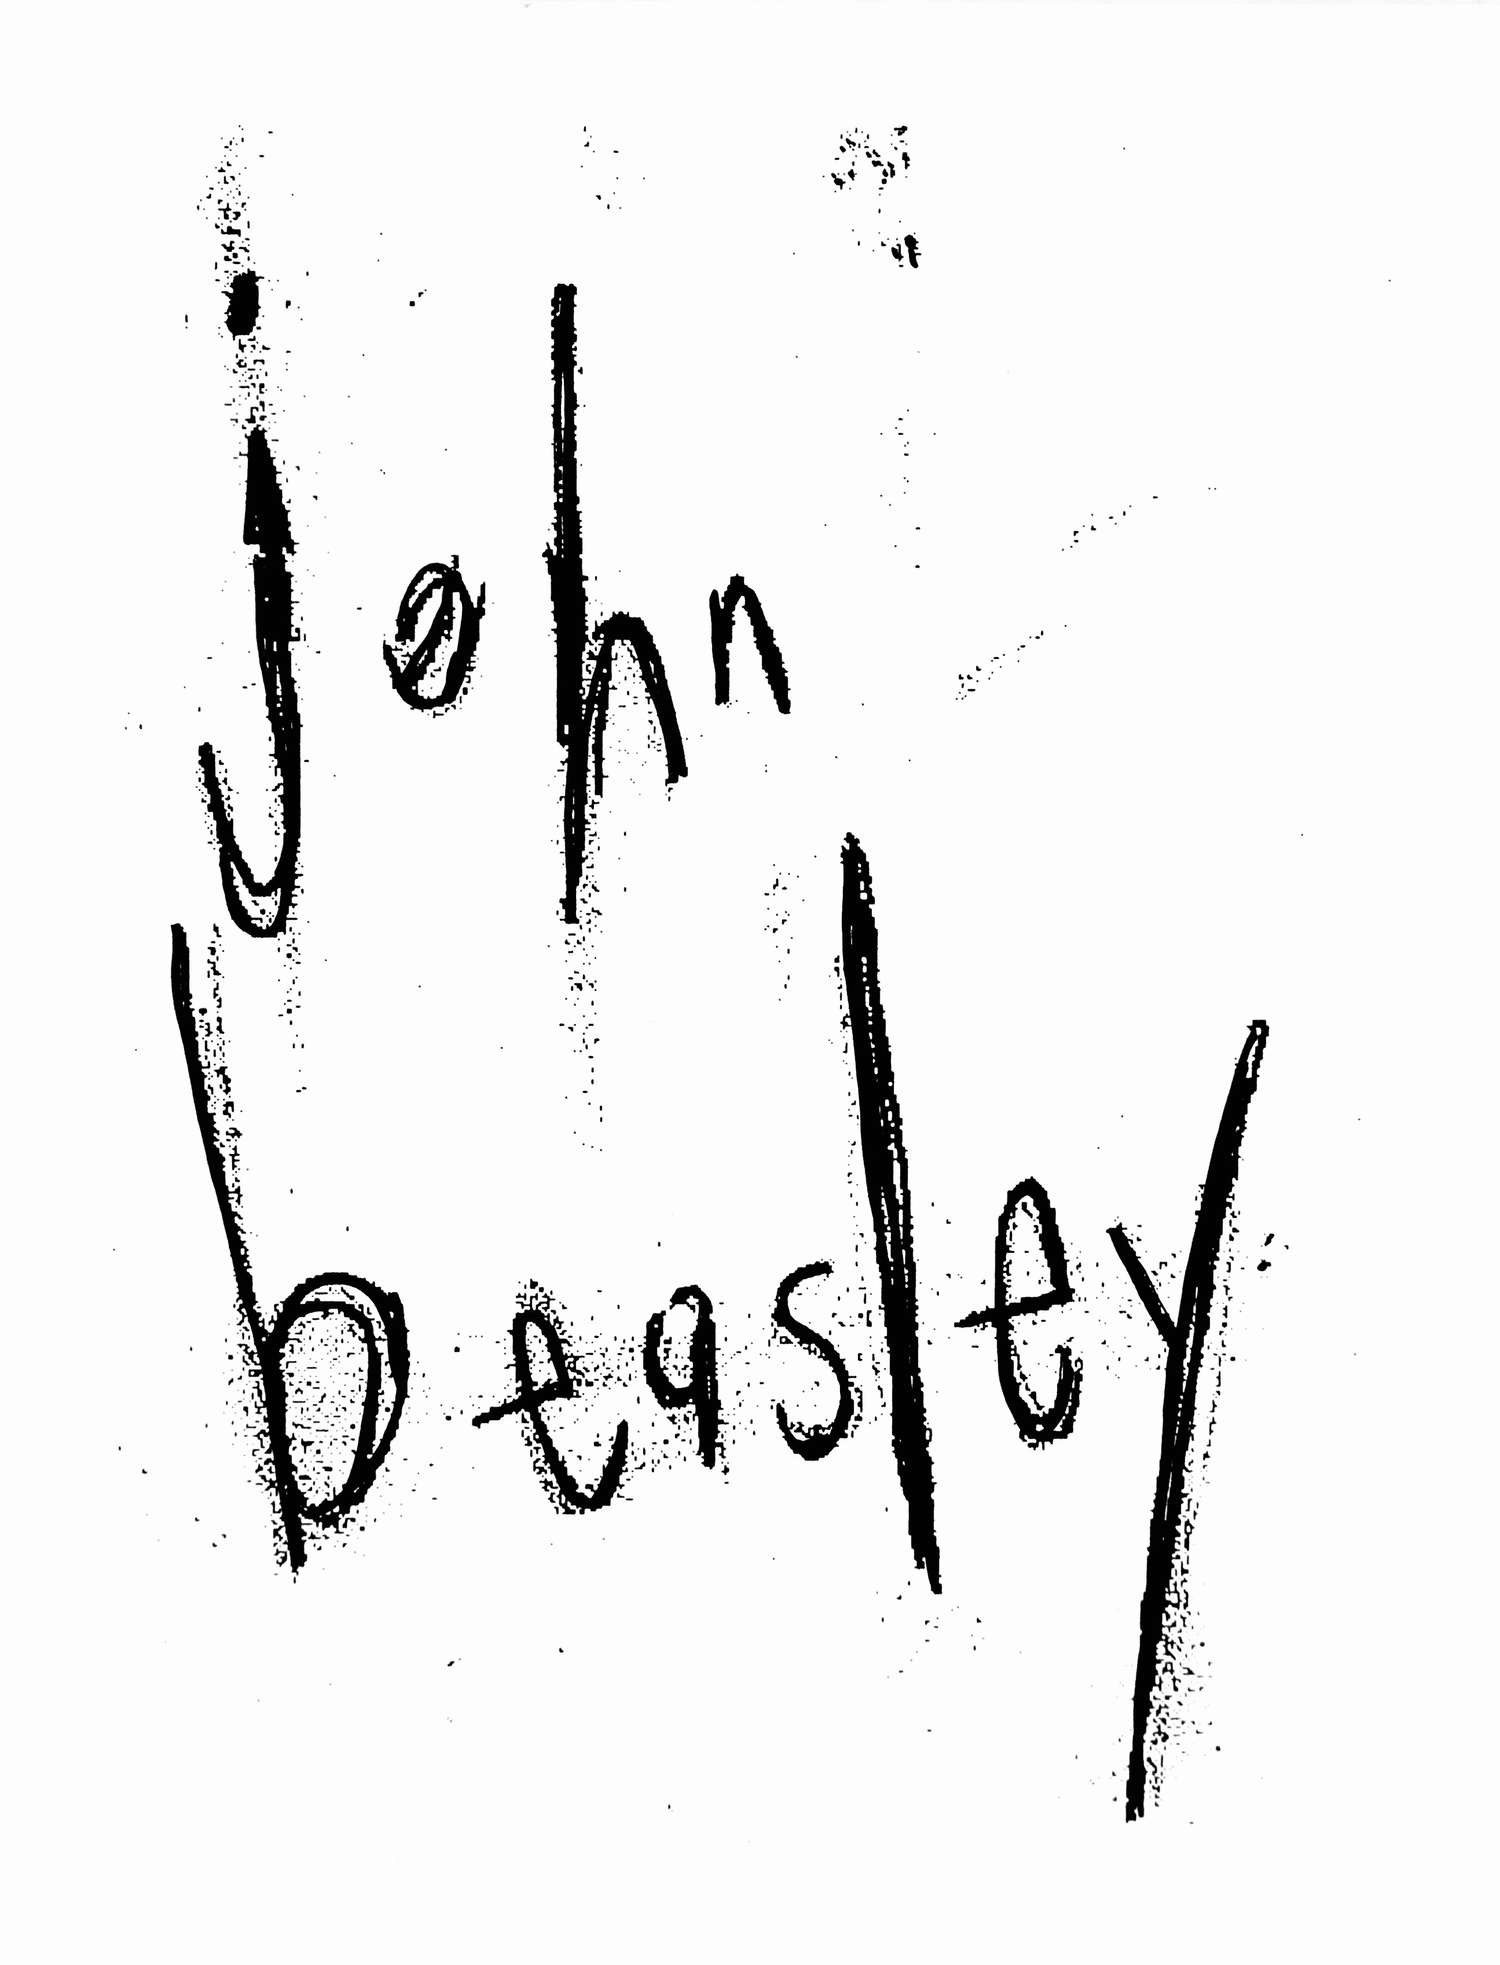 JOHN BEASLEY